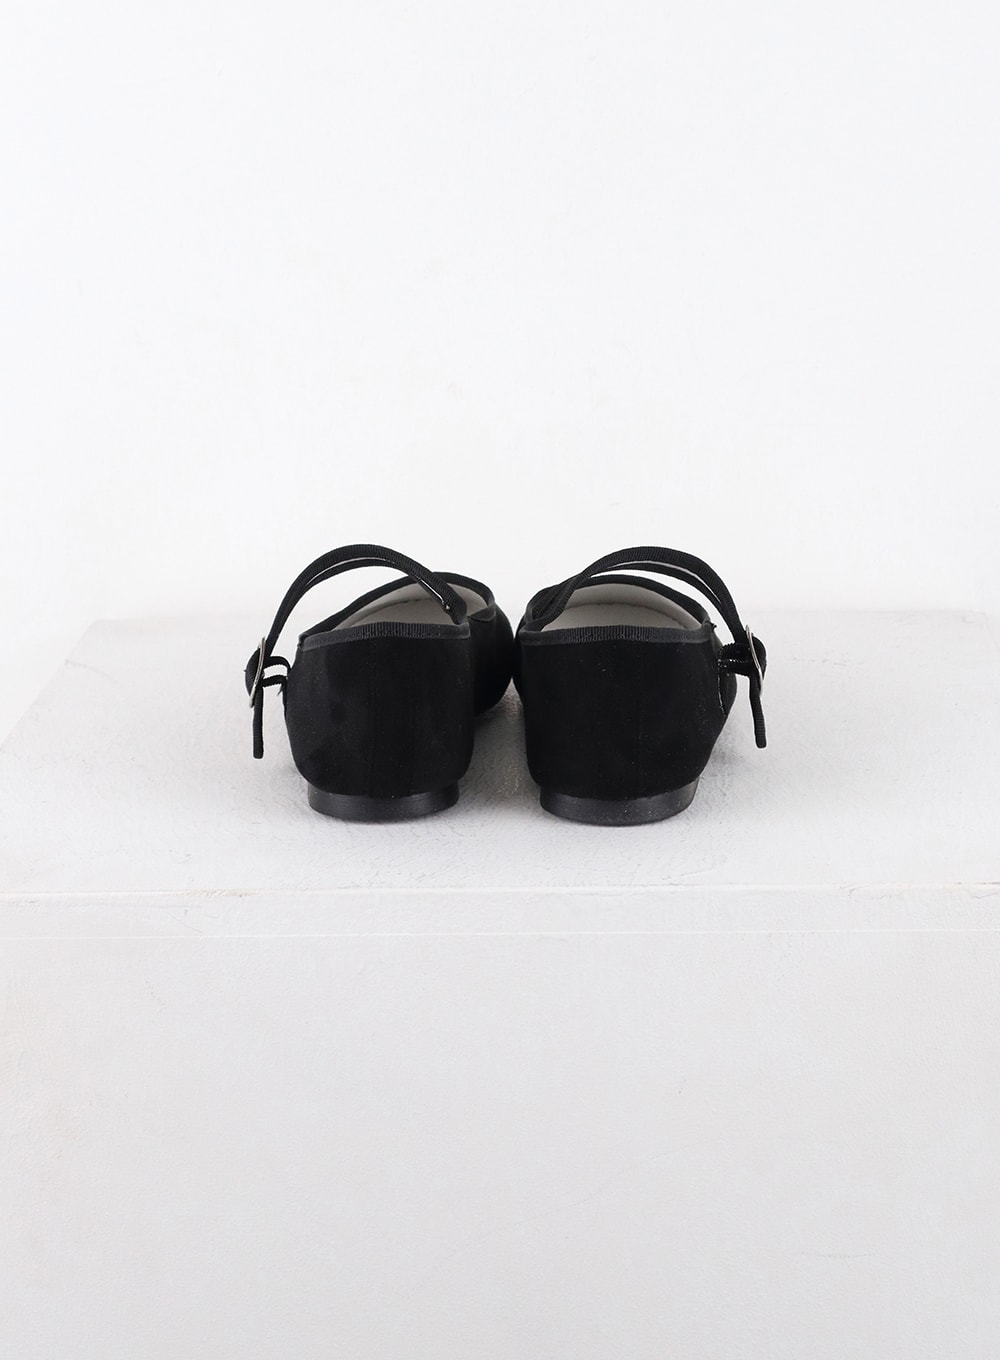 buckled-flat-velvet-shoes-od320